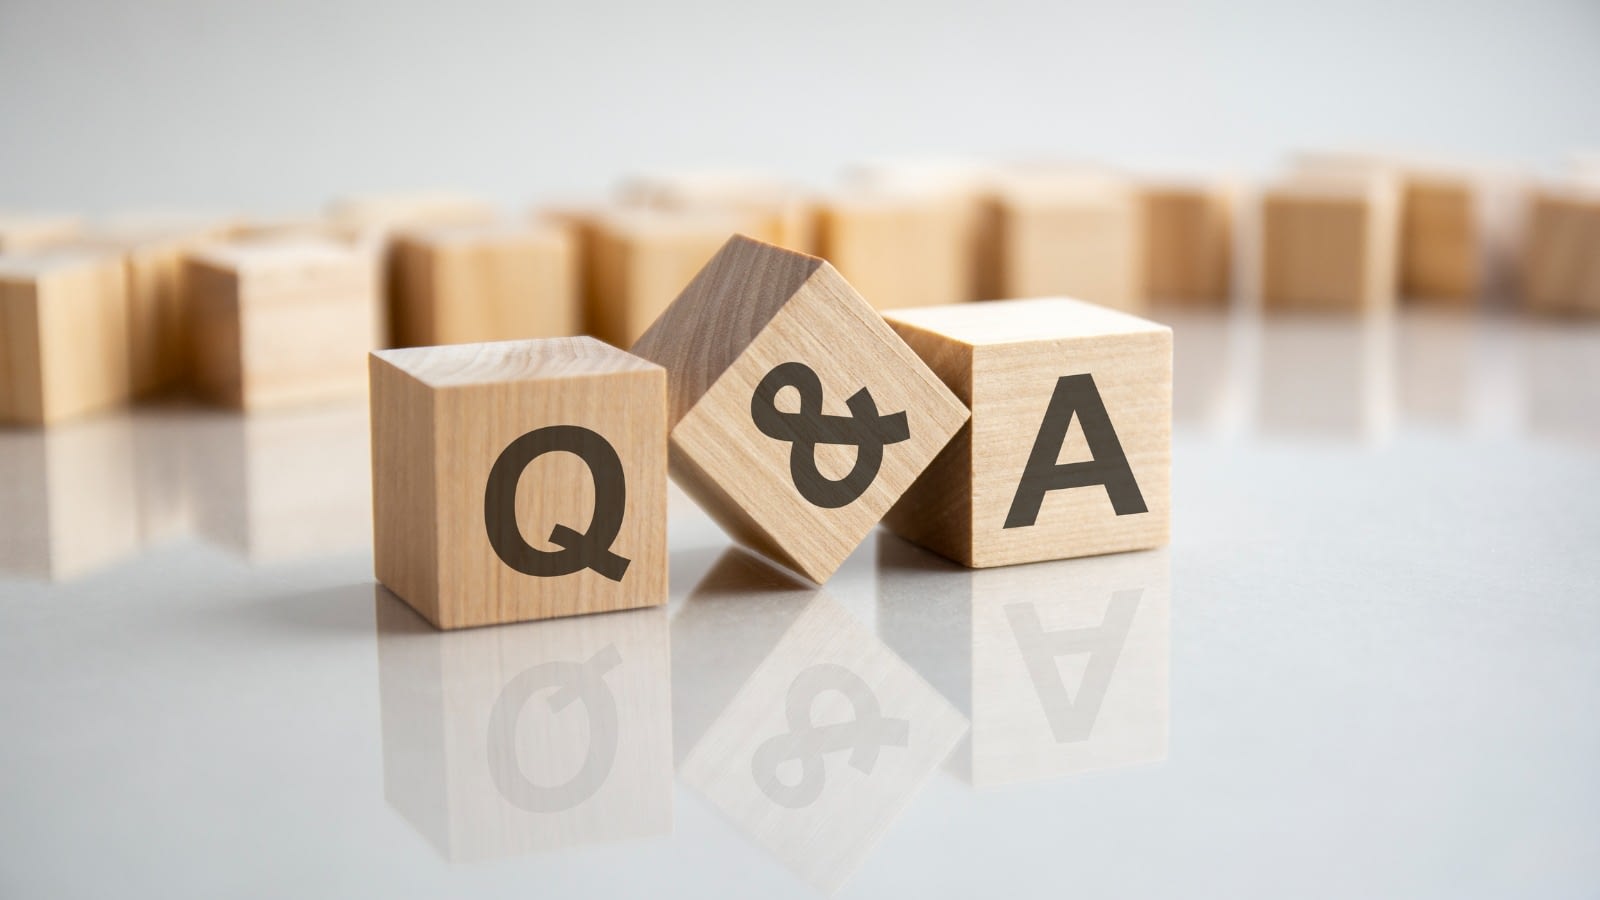 Q & A wooden blocks